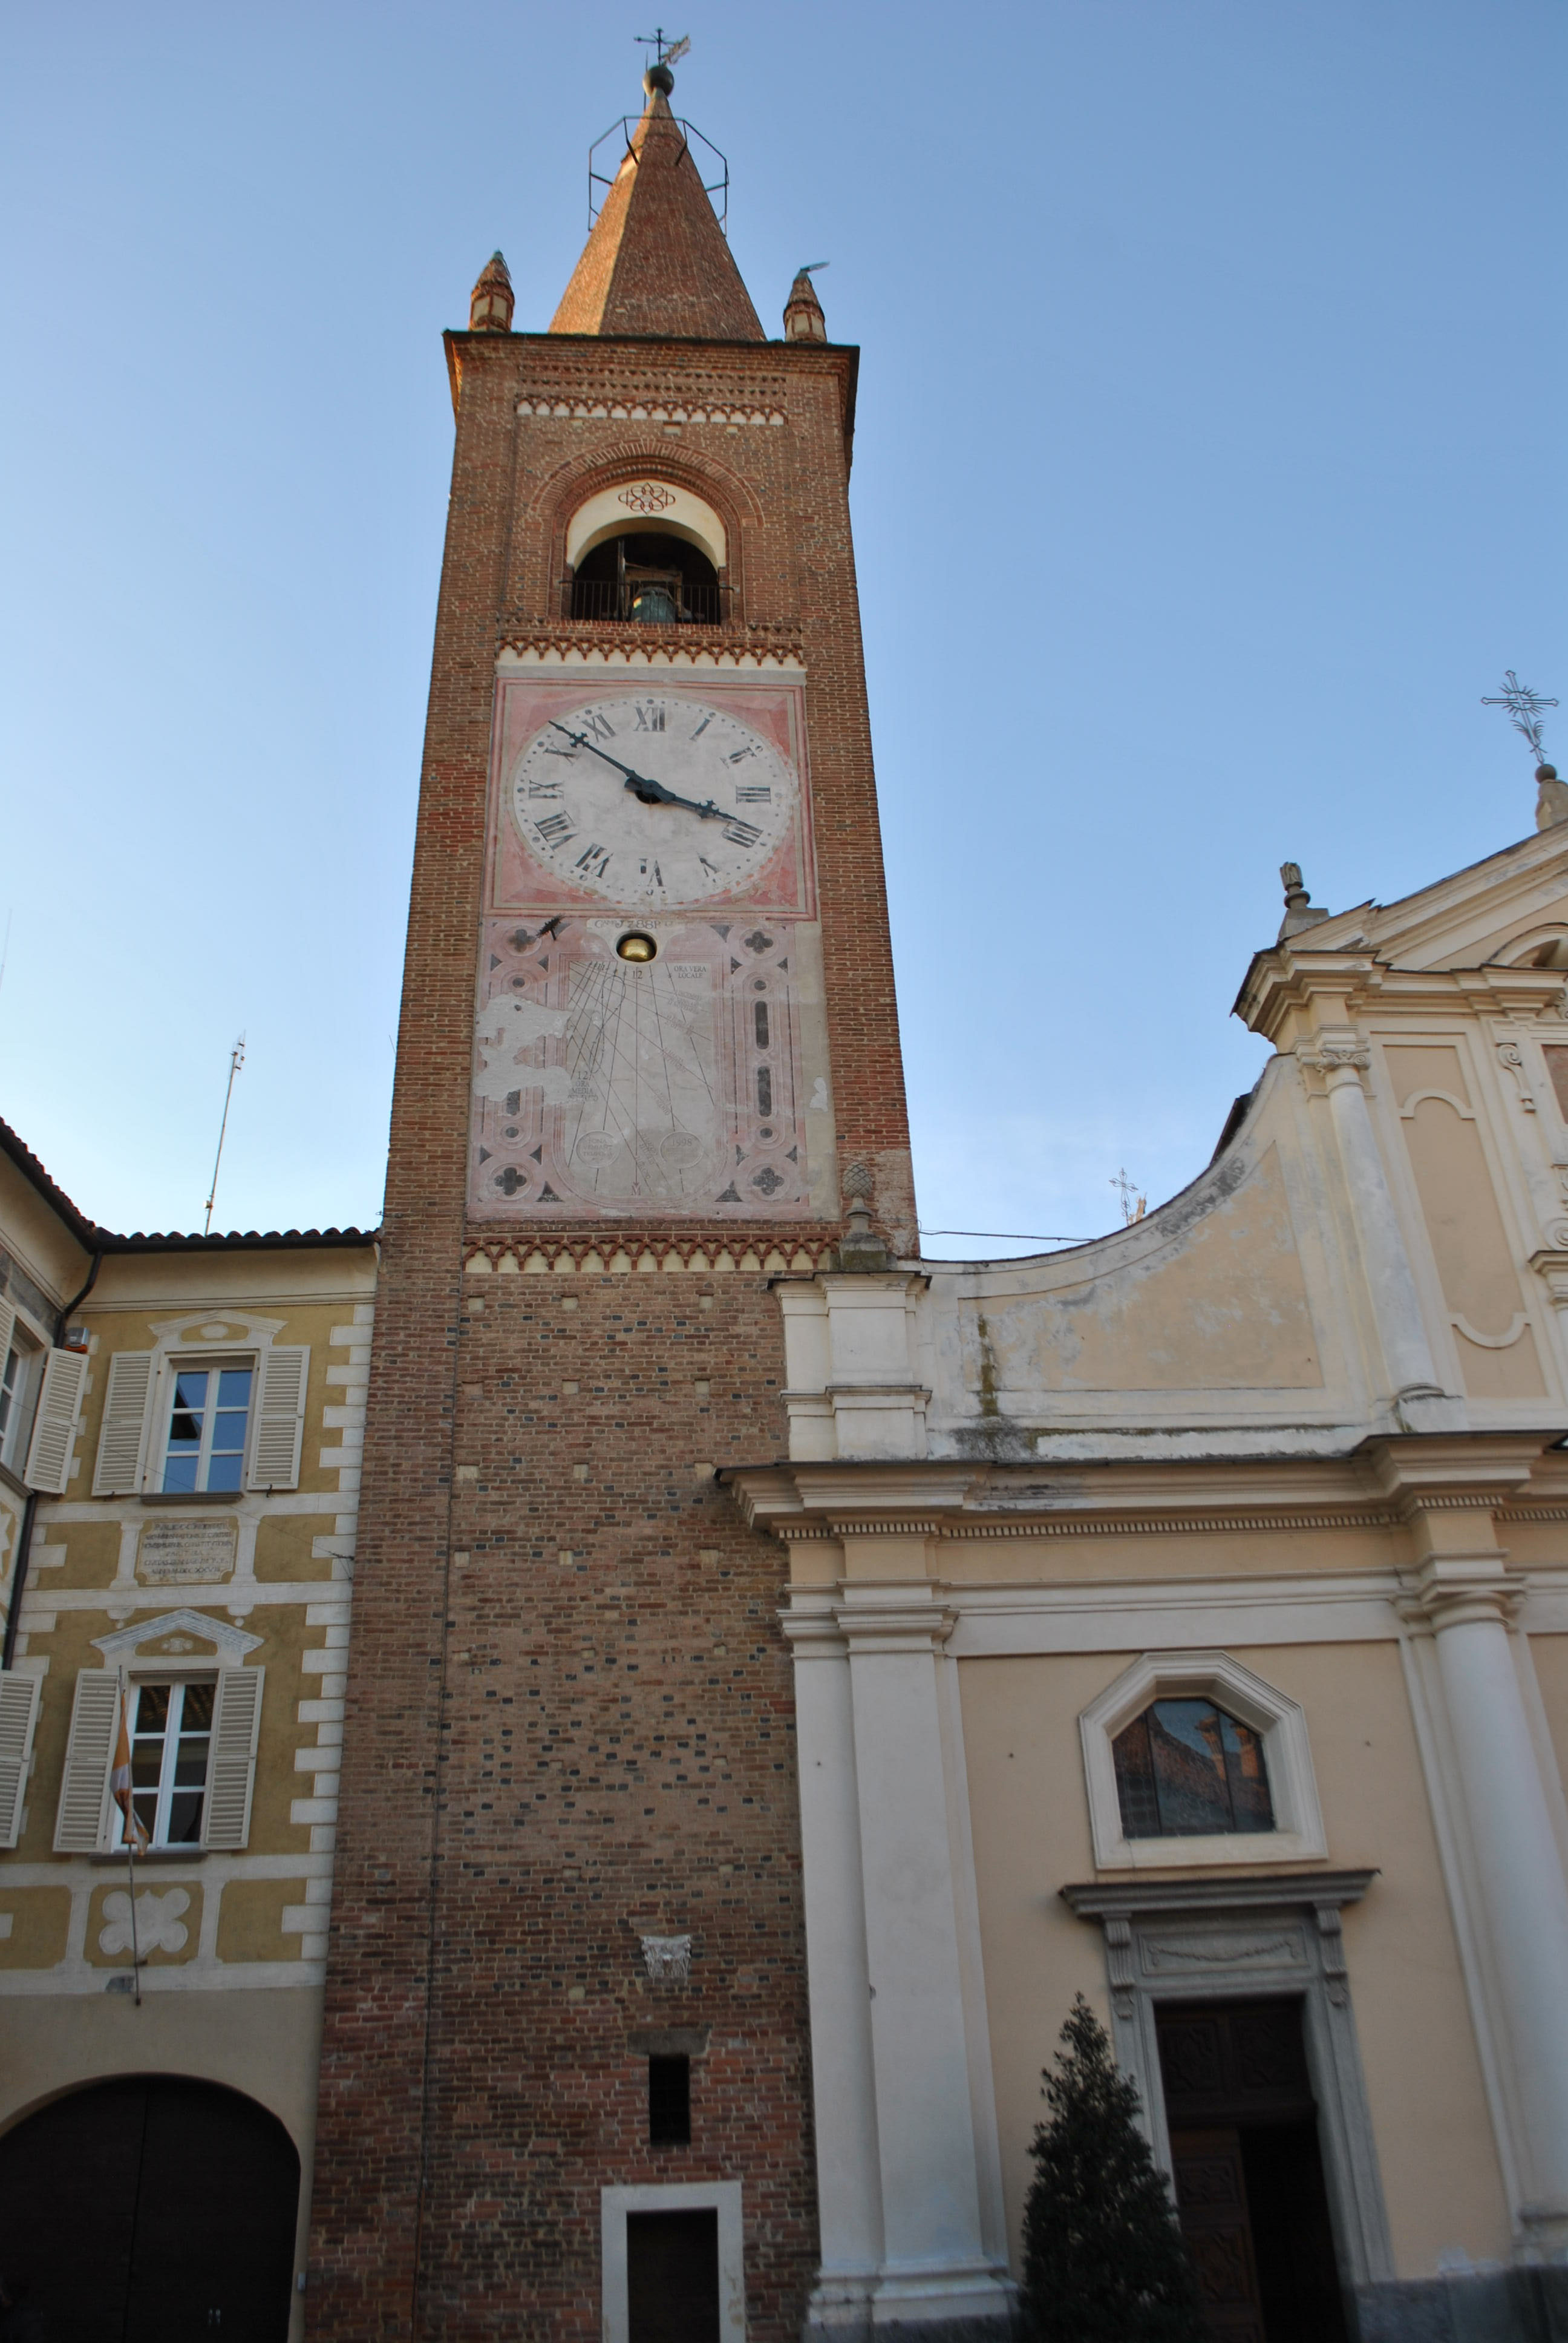 Campanile della Chiesa della Assunta (campanile) - Bene Vagienna (CN)  (XIV)